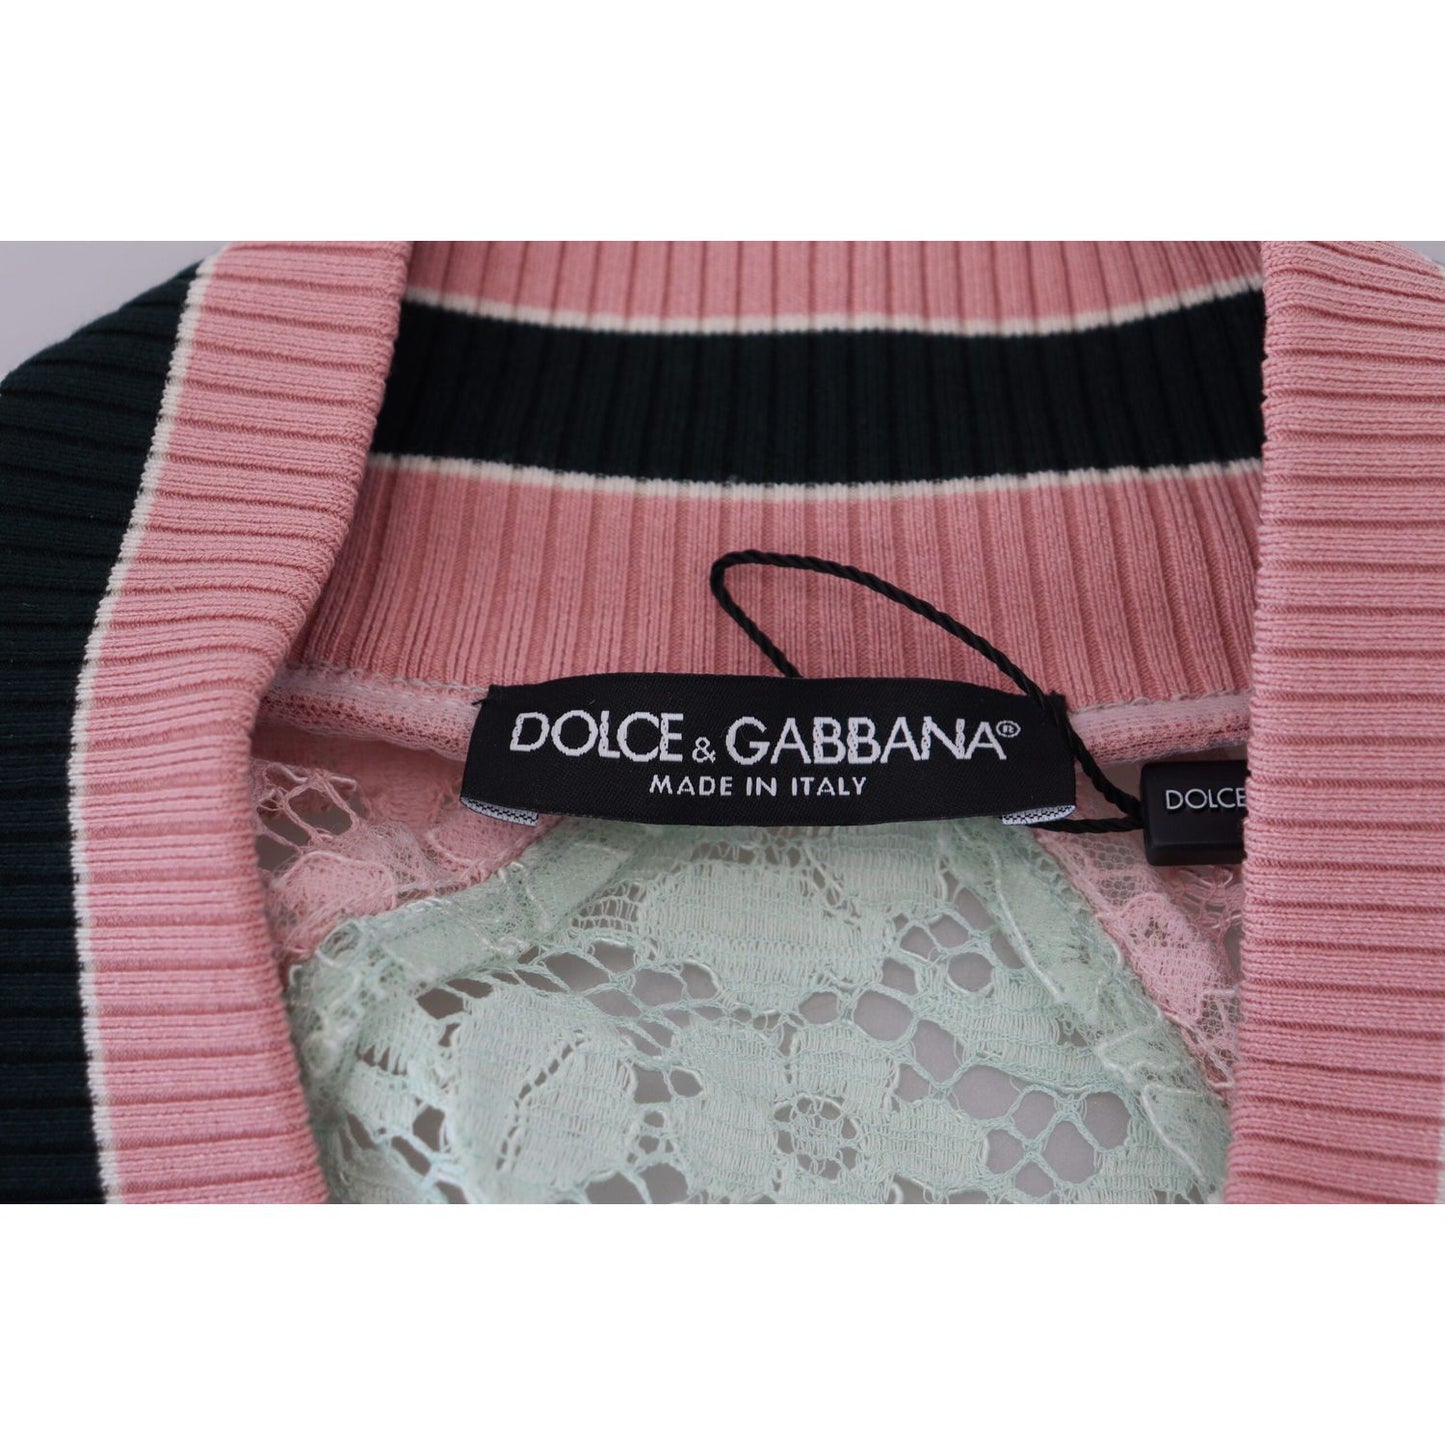 Dolce & Gabbana Elegant Floral Lace Bomber Jacket elegant-floral-lace-bomber-jacket